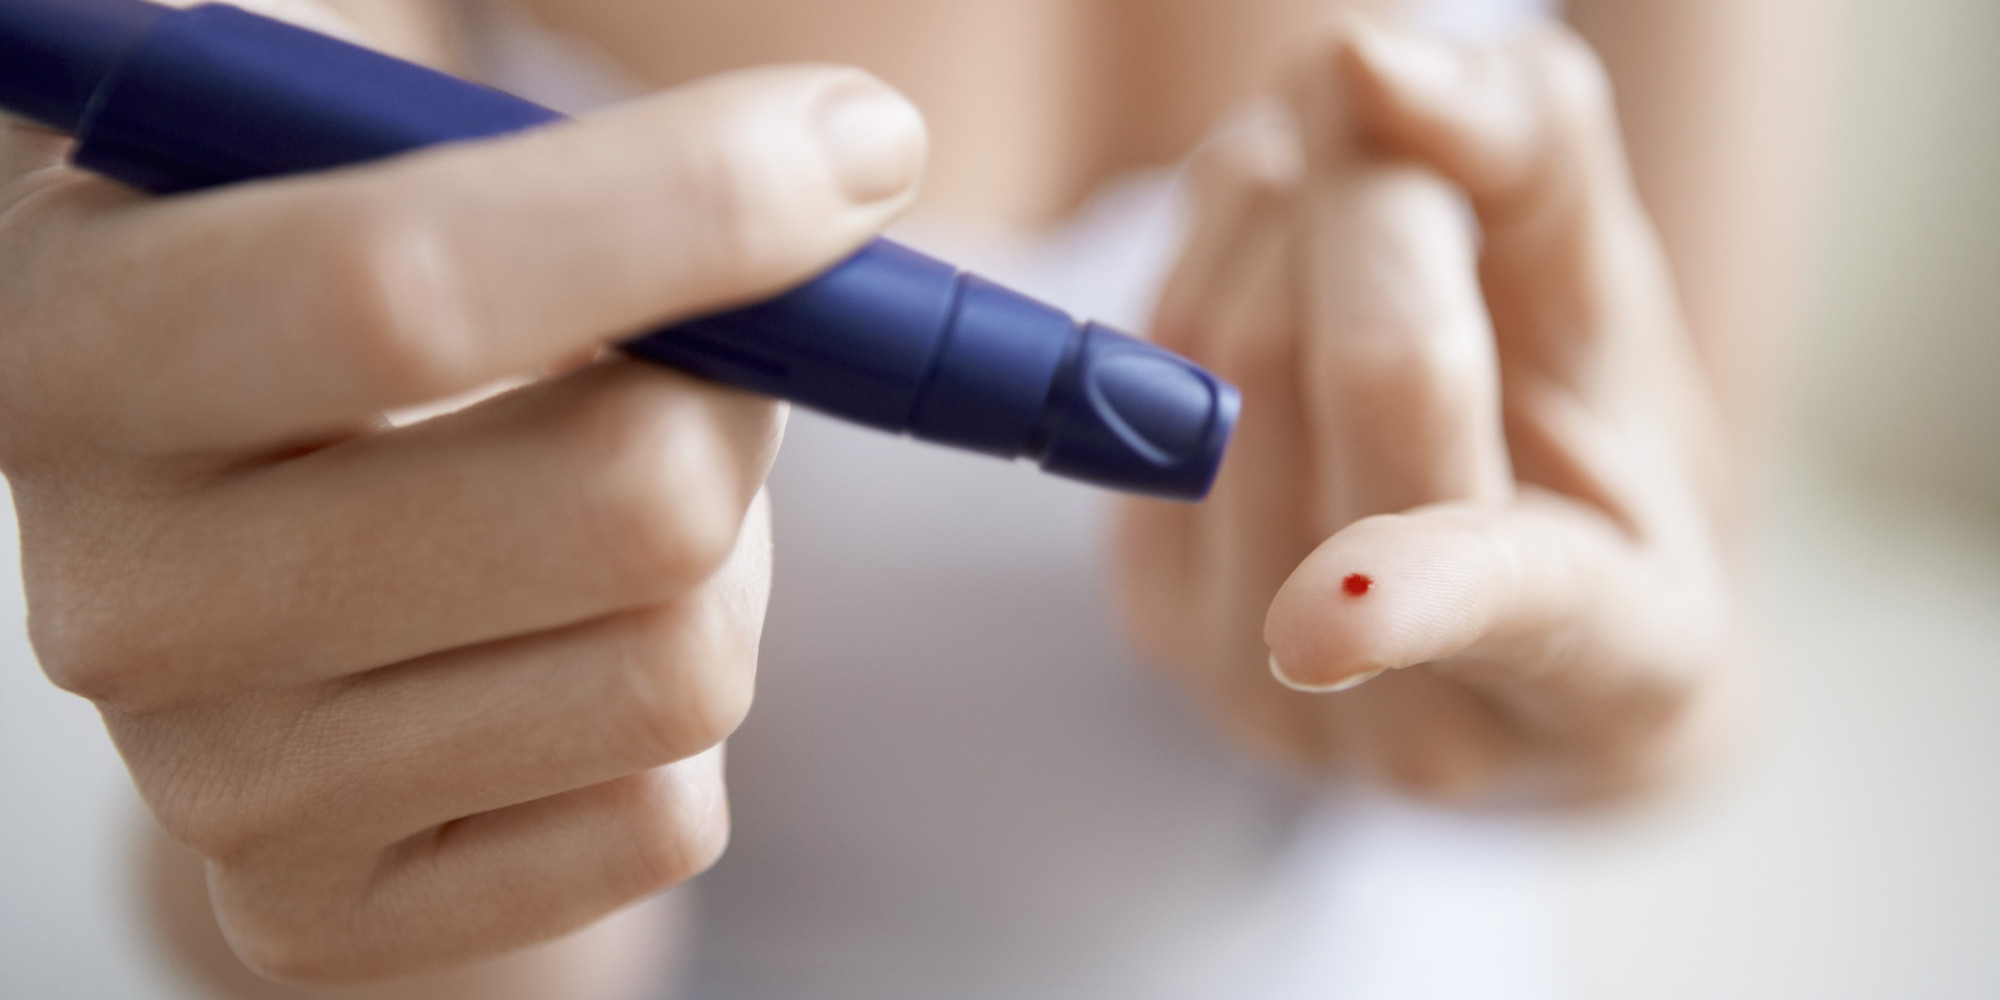   علاج بديل بالخلايا الجديدة قد يجعل مرض السكر شيئا من الماضي